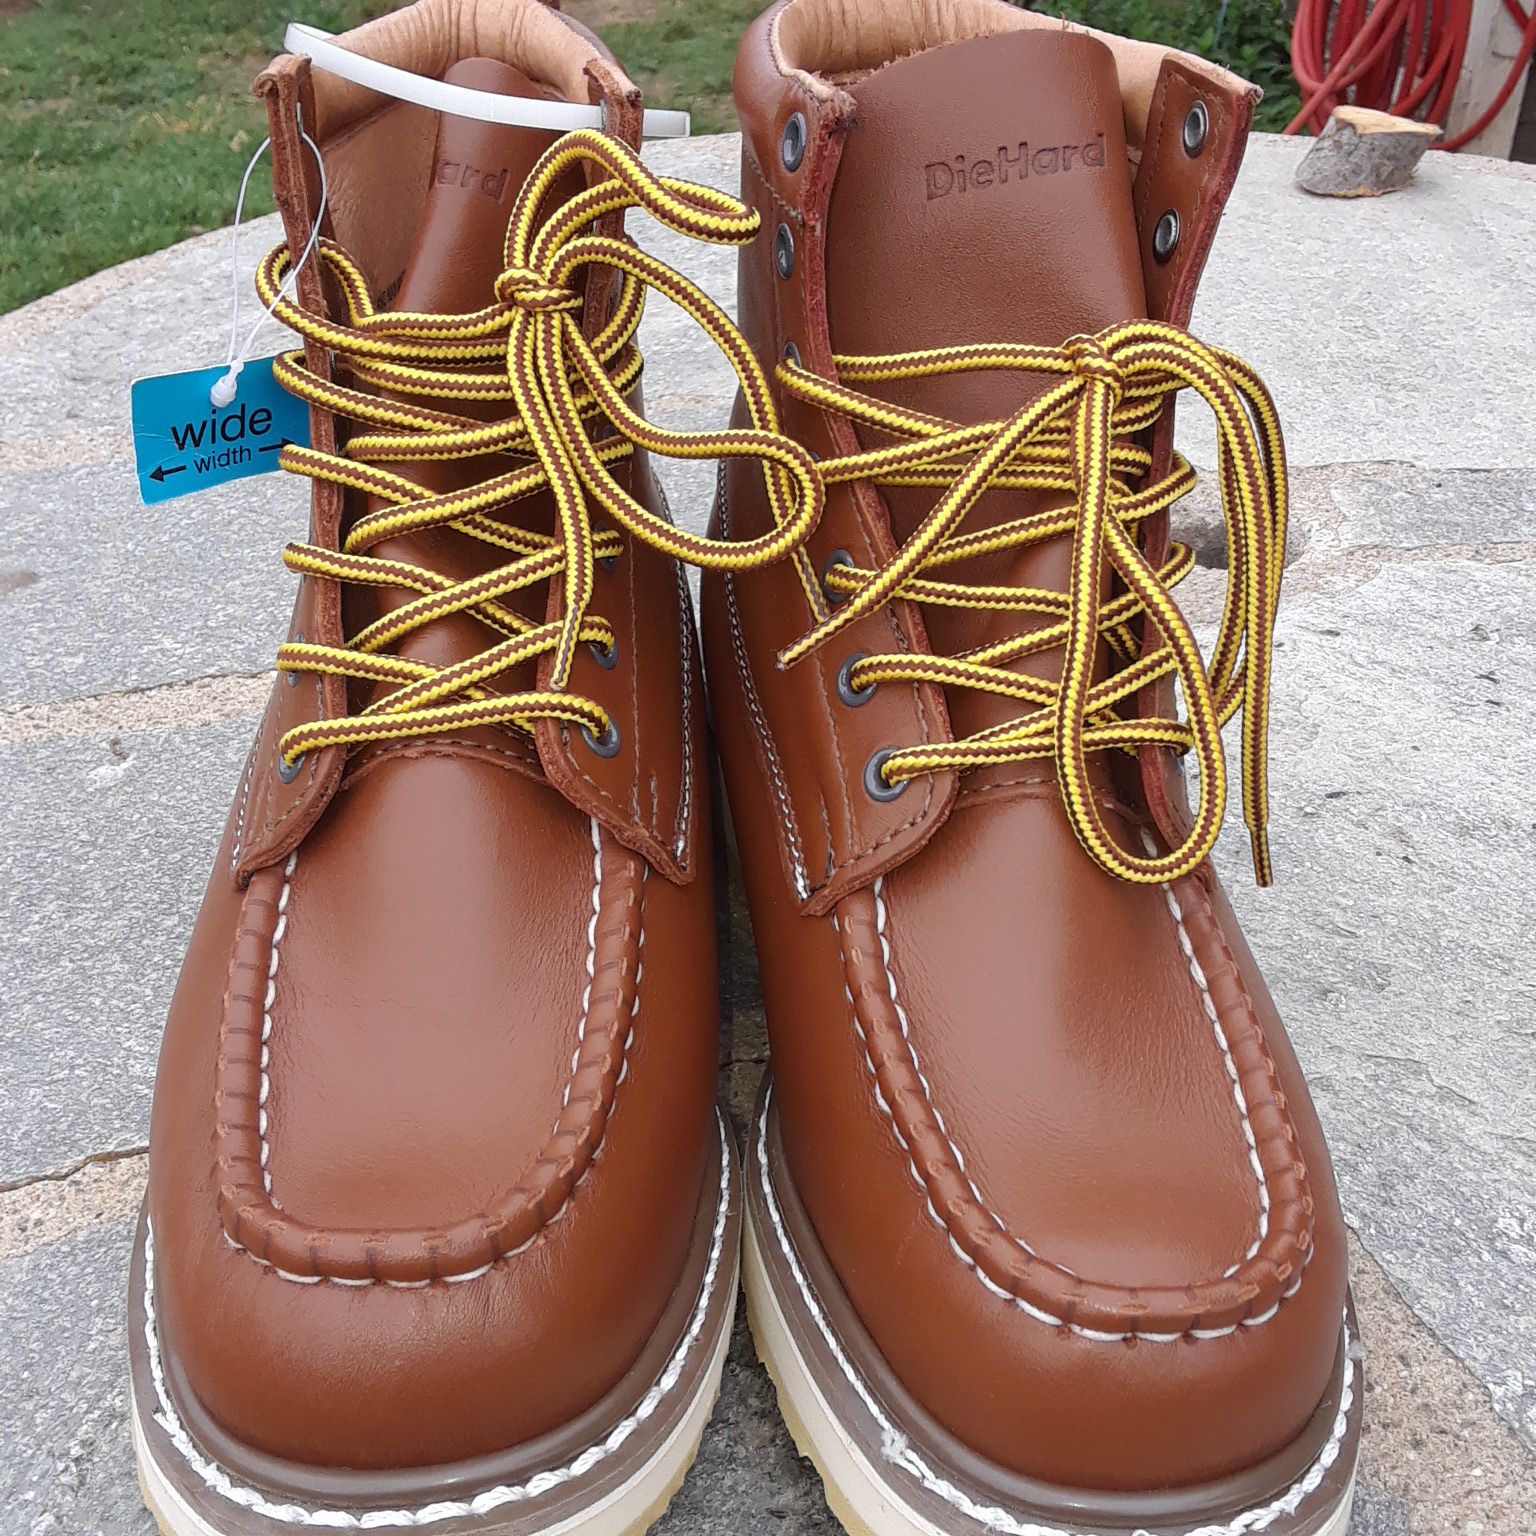 DieHards work boots size 8 1/2 $50